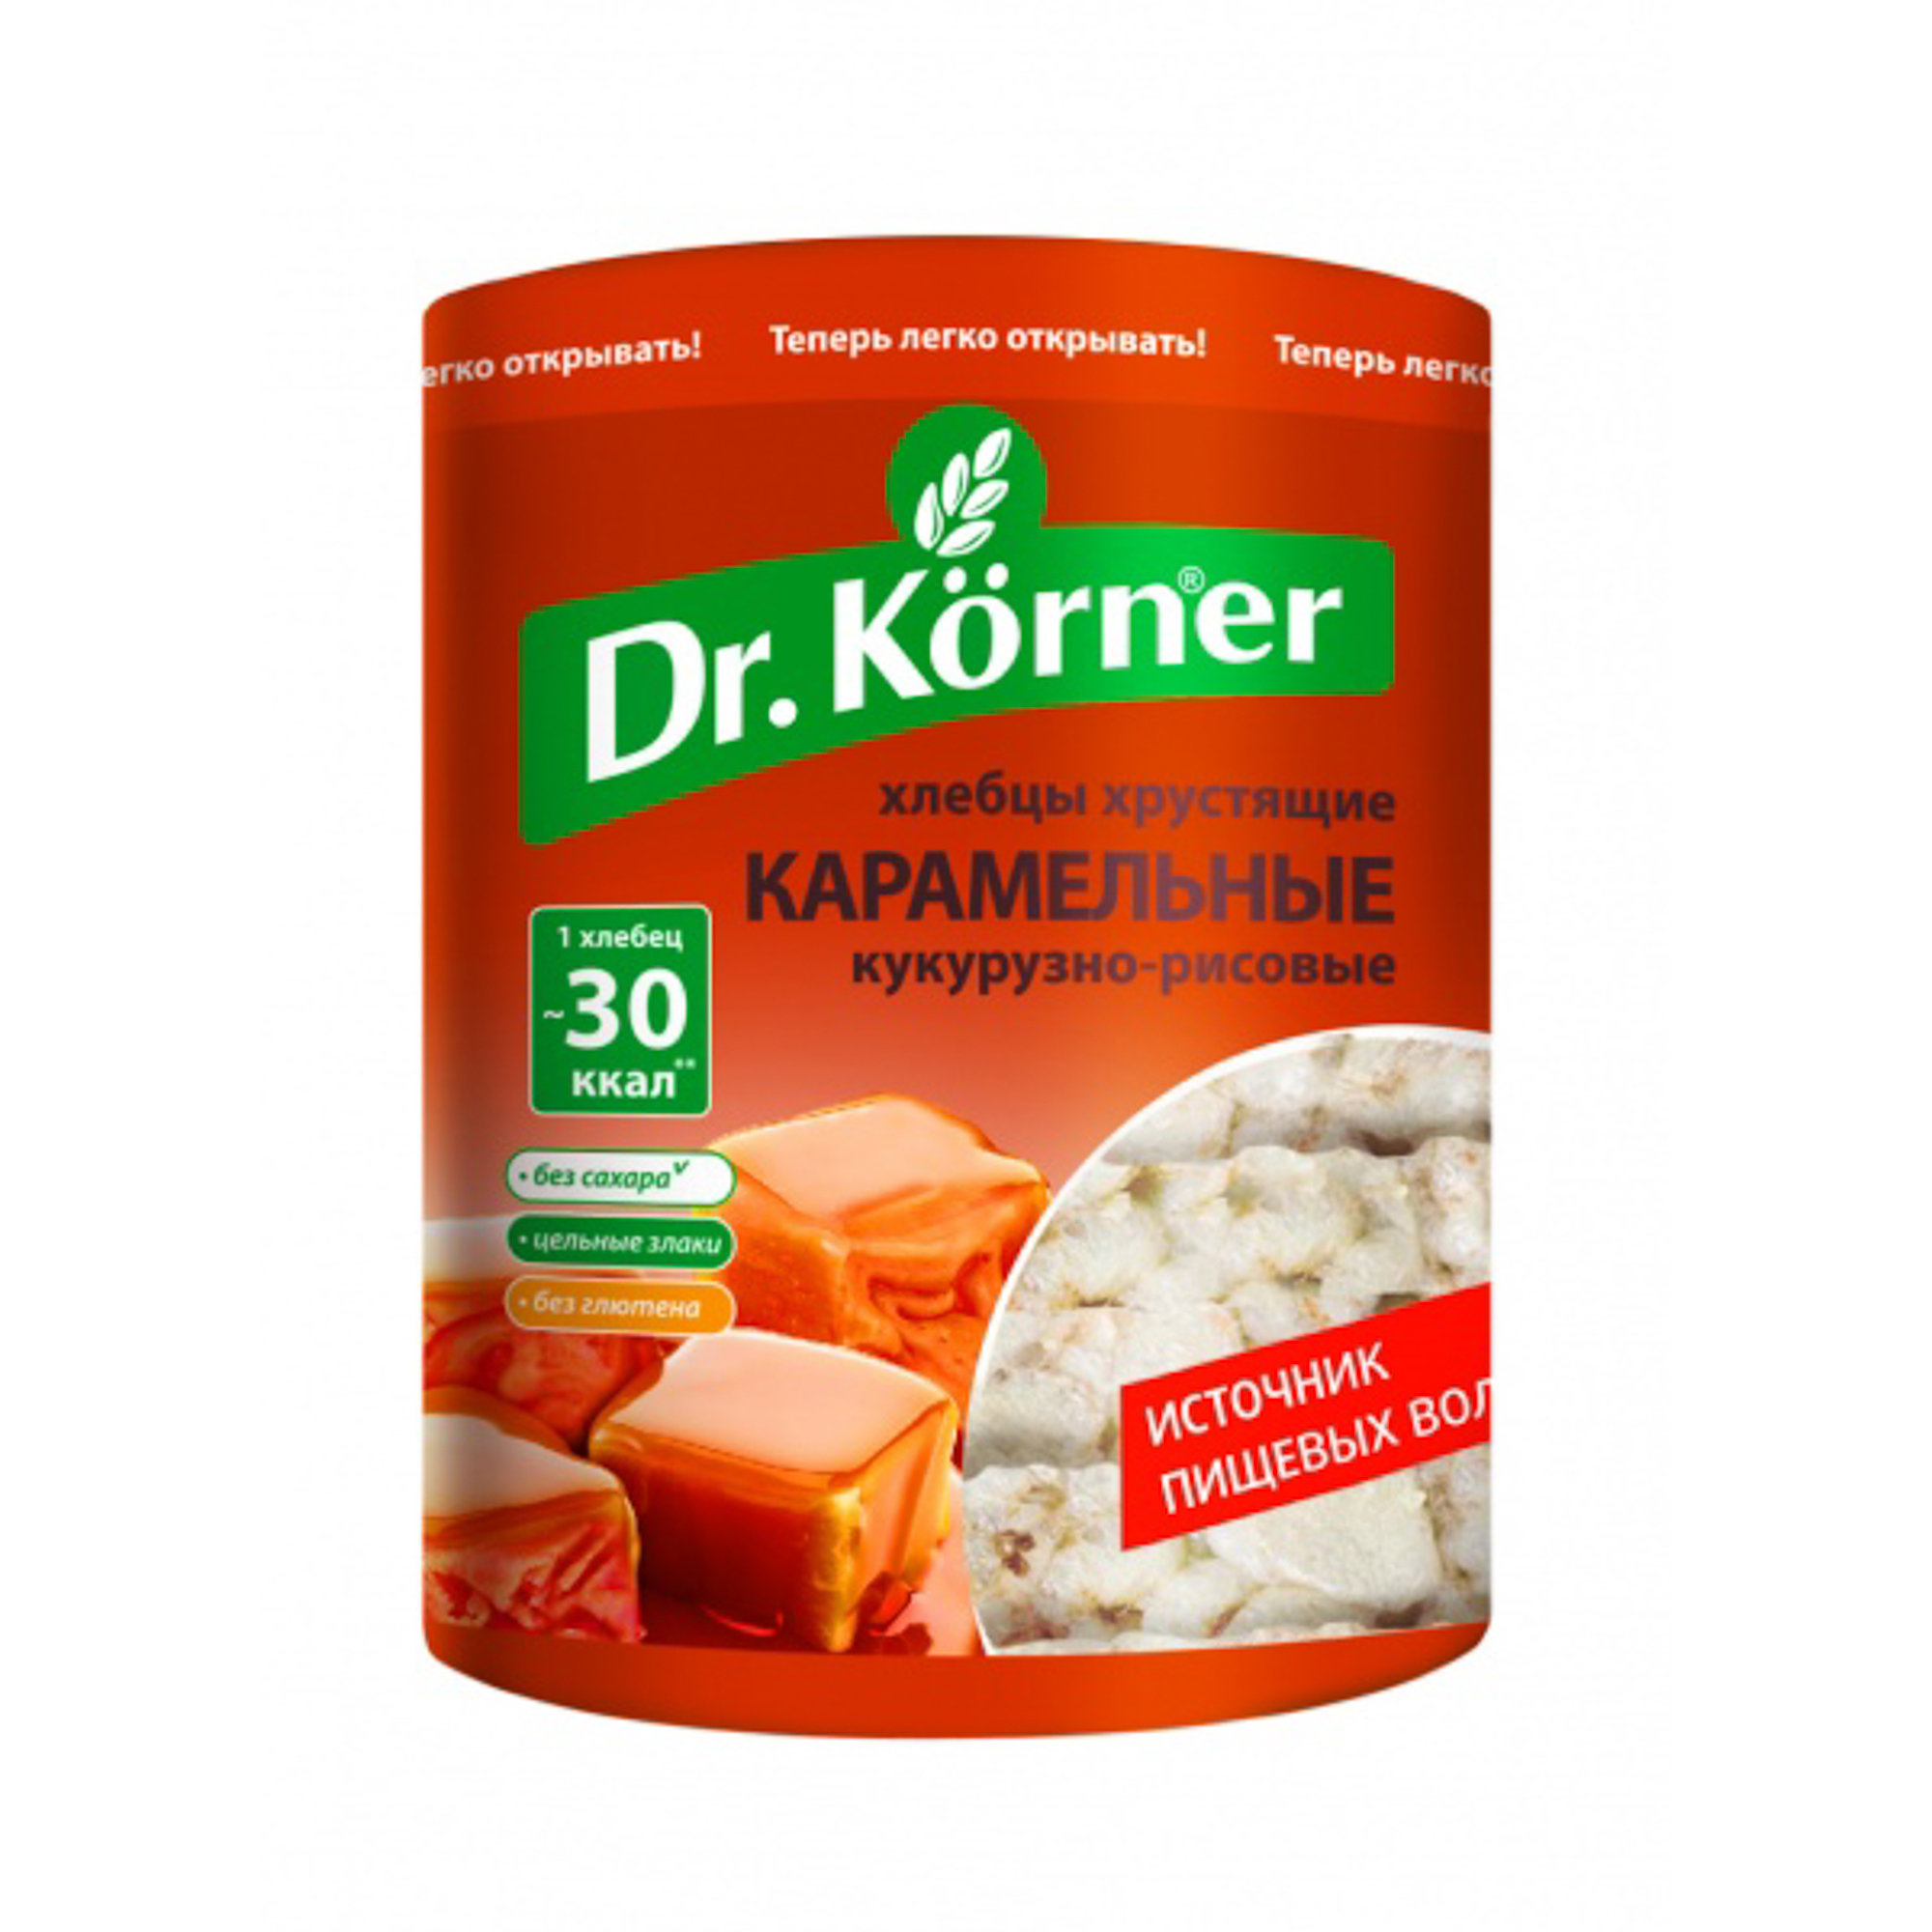 Хлебцы Dr.Korner хрустящие кукурузно-рисовые карамельные 90 г хлебцы кукурузно рисовые dr körner карамельные без глютена 90 г